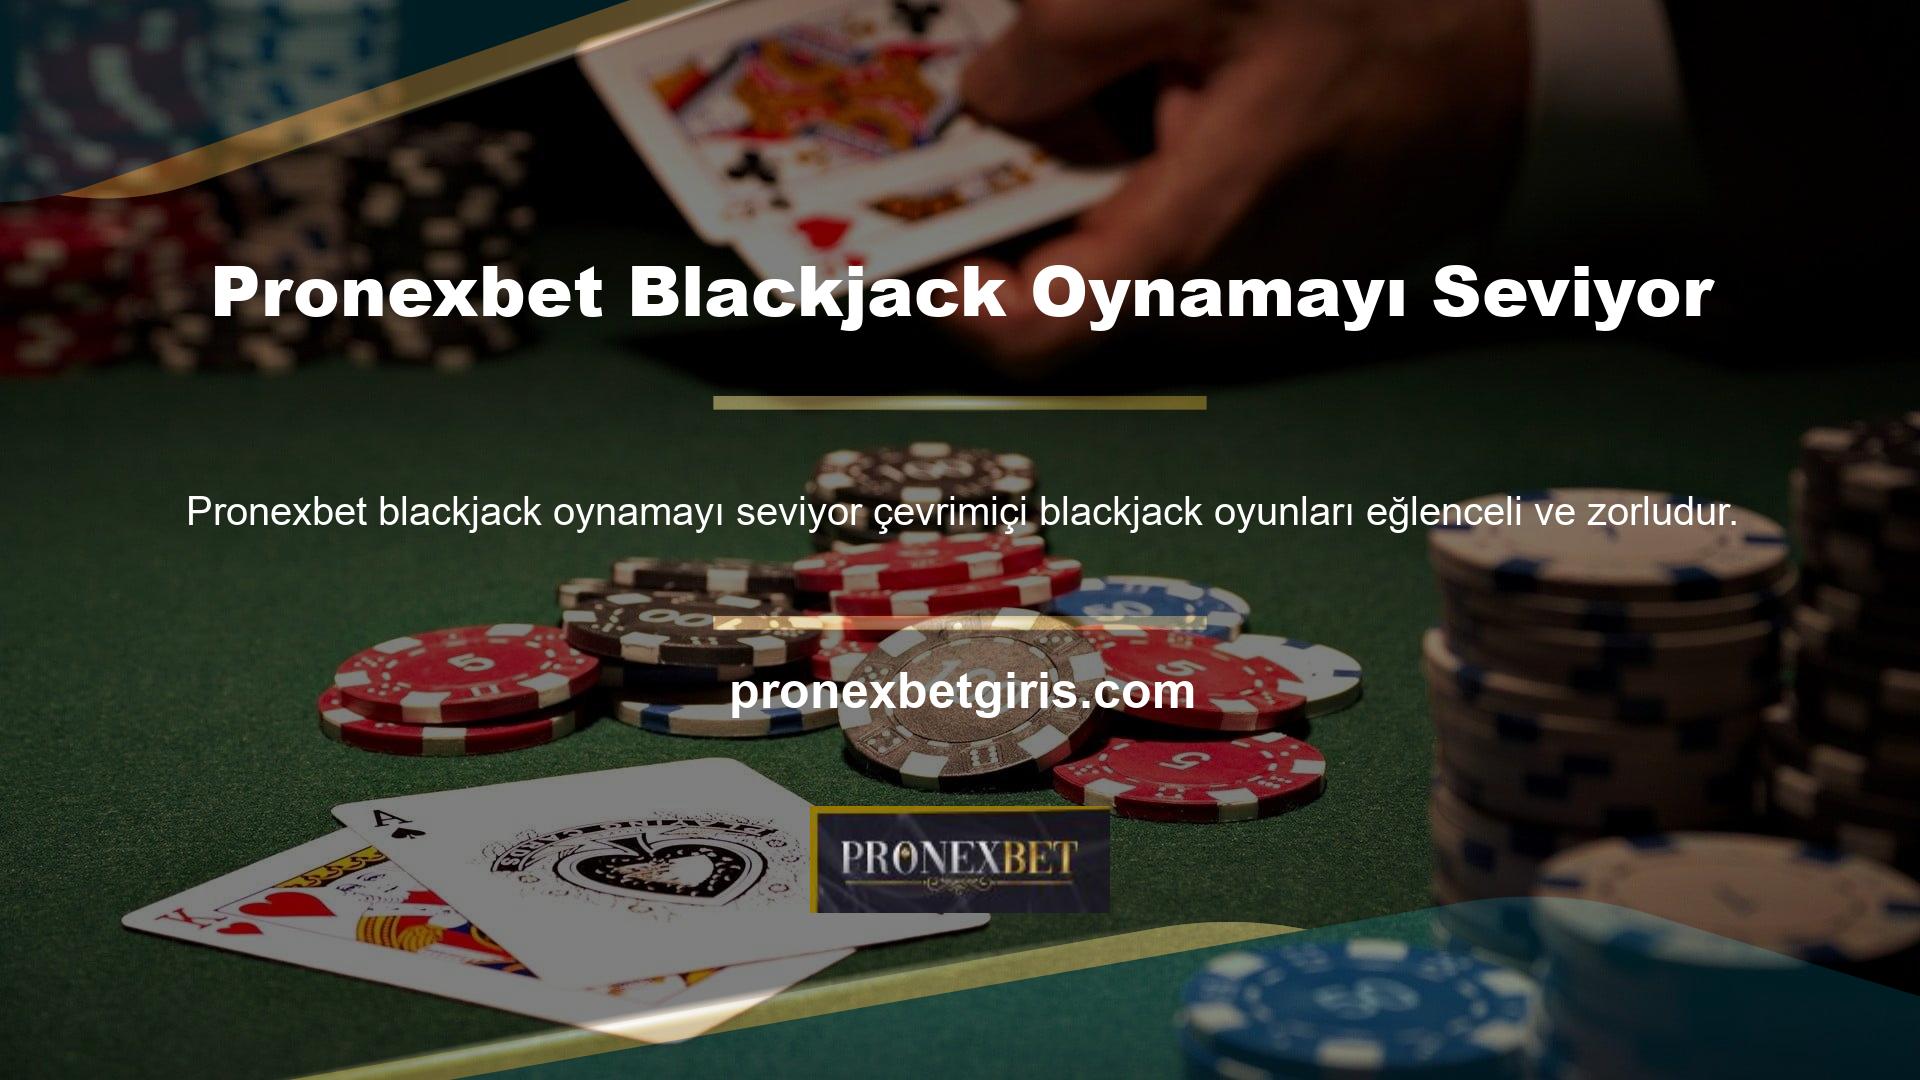 Çeşitli blackjack seçenekleri ve sektördeki en iyi casino seçeneklerinden biri bu adreste sizi bekliyor